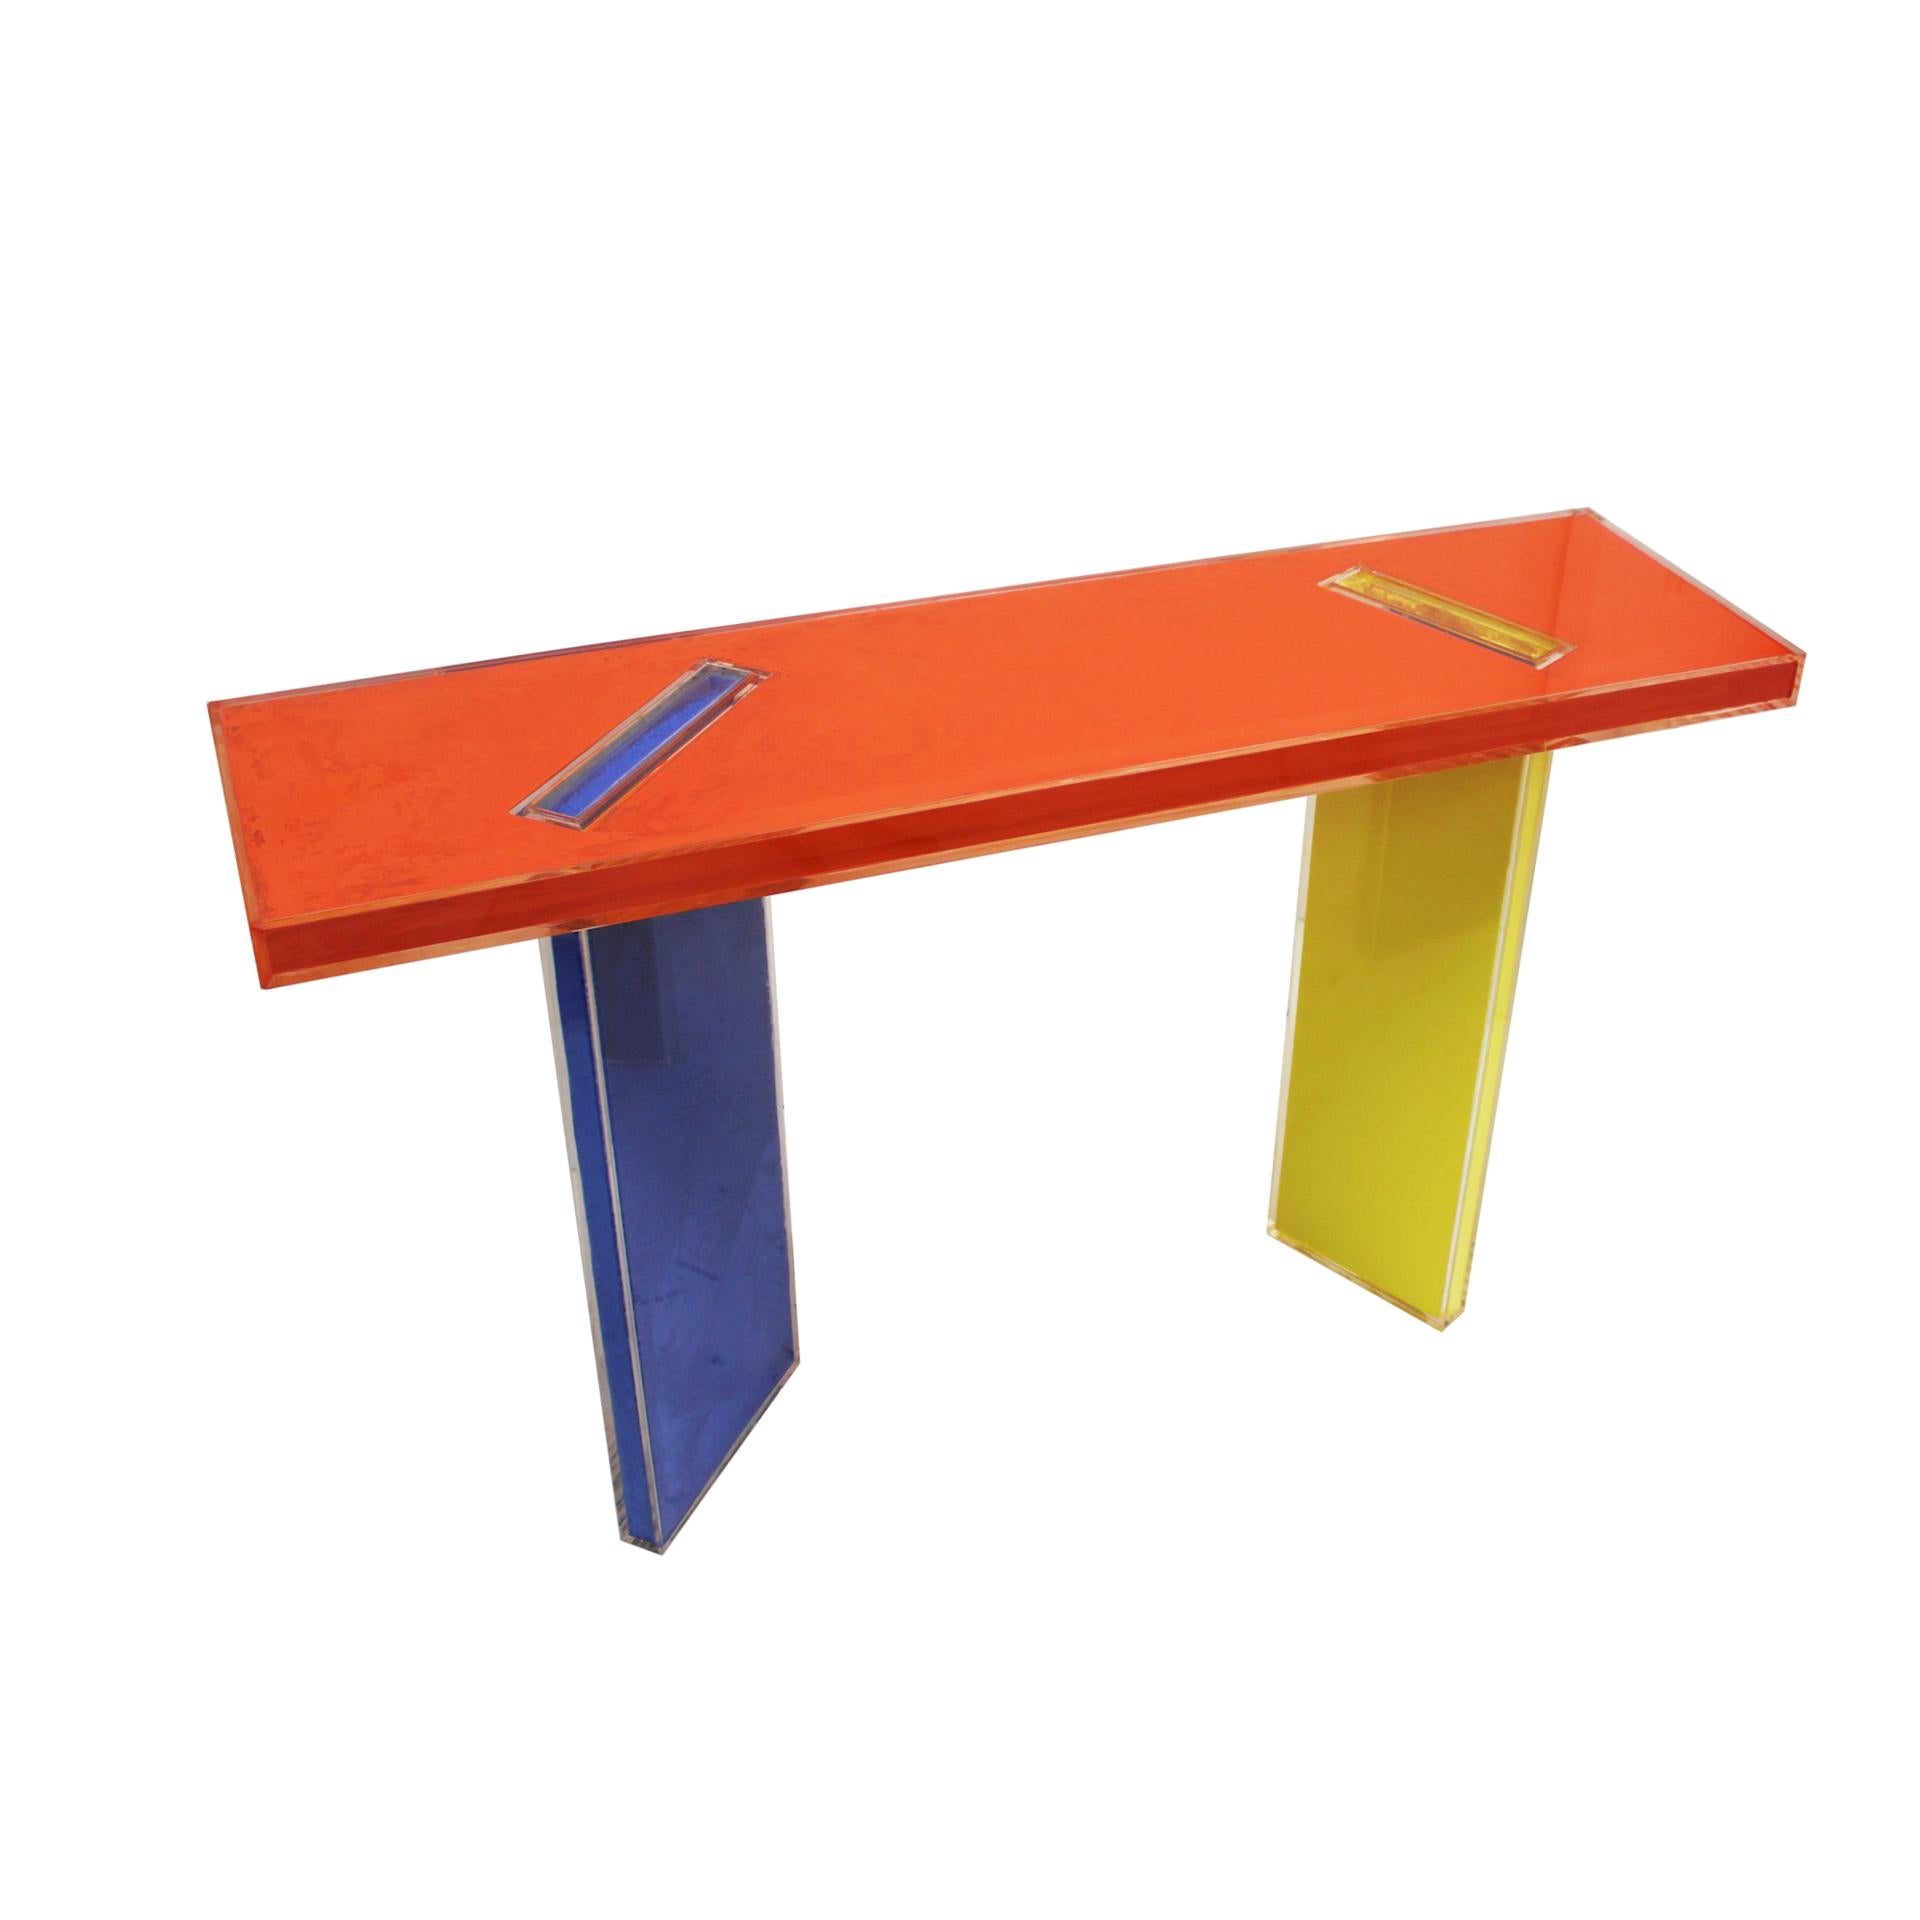 Spanish Contemporary Orange, Yellow and Blue in Plexiglass Console Designed by La Studio For Sale